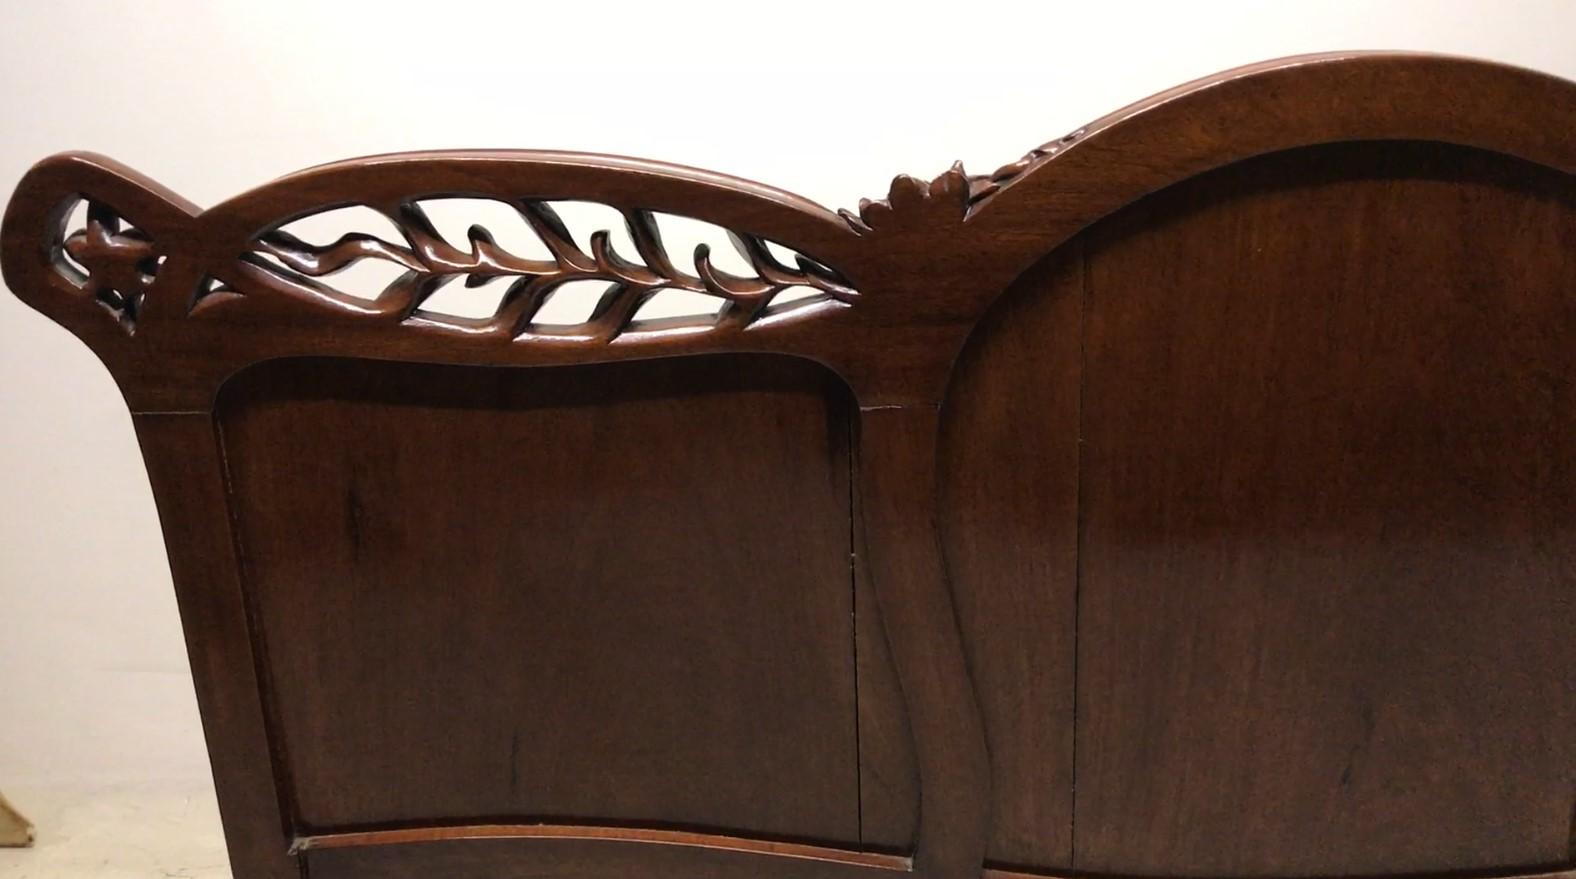 Unglaubliches Jugendstilspiel.
Der Preis beinhaltet die 3 Sessel
1 Sofa
2 Sessel
MATERIAL: Holz, neu gepolstert mit Federn und Gummiband (wie in alten Zeiten)
Seit 1982 haben wir uns auf den Verkauf von Art Deco, Jugendstil und Vintage